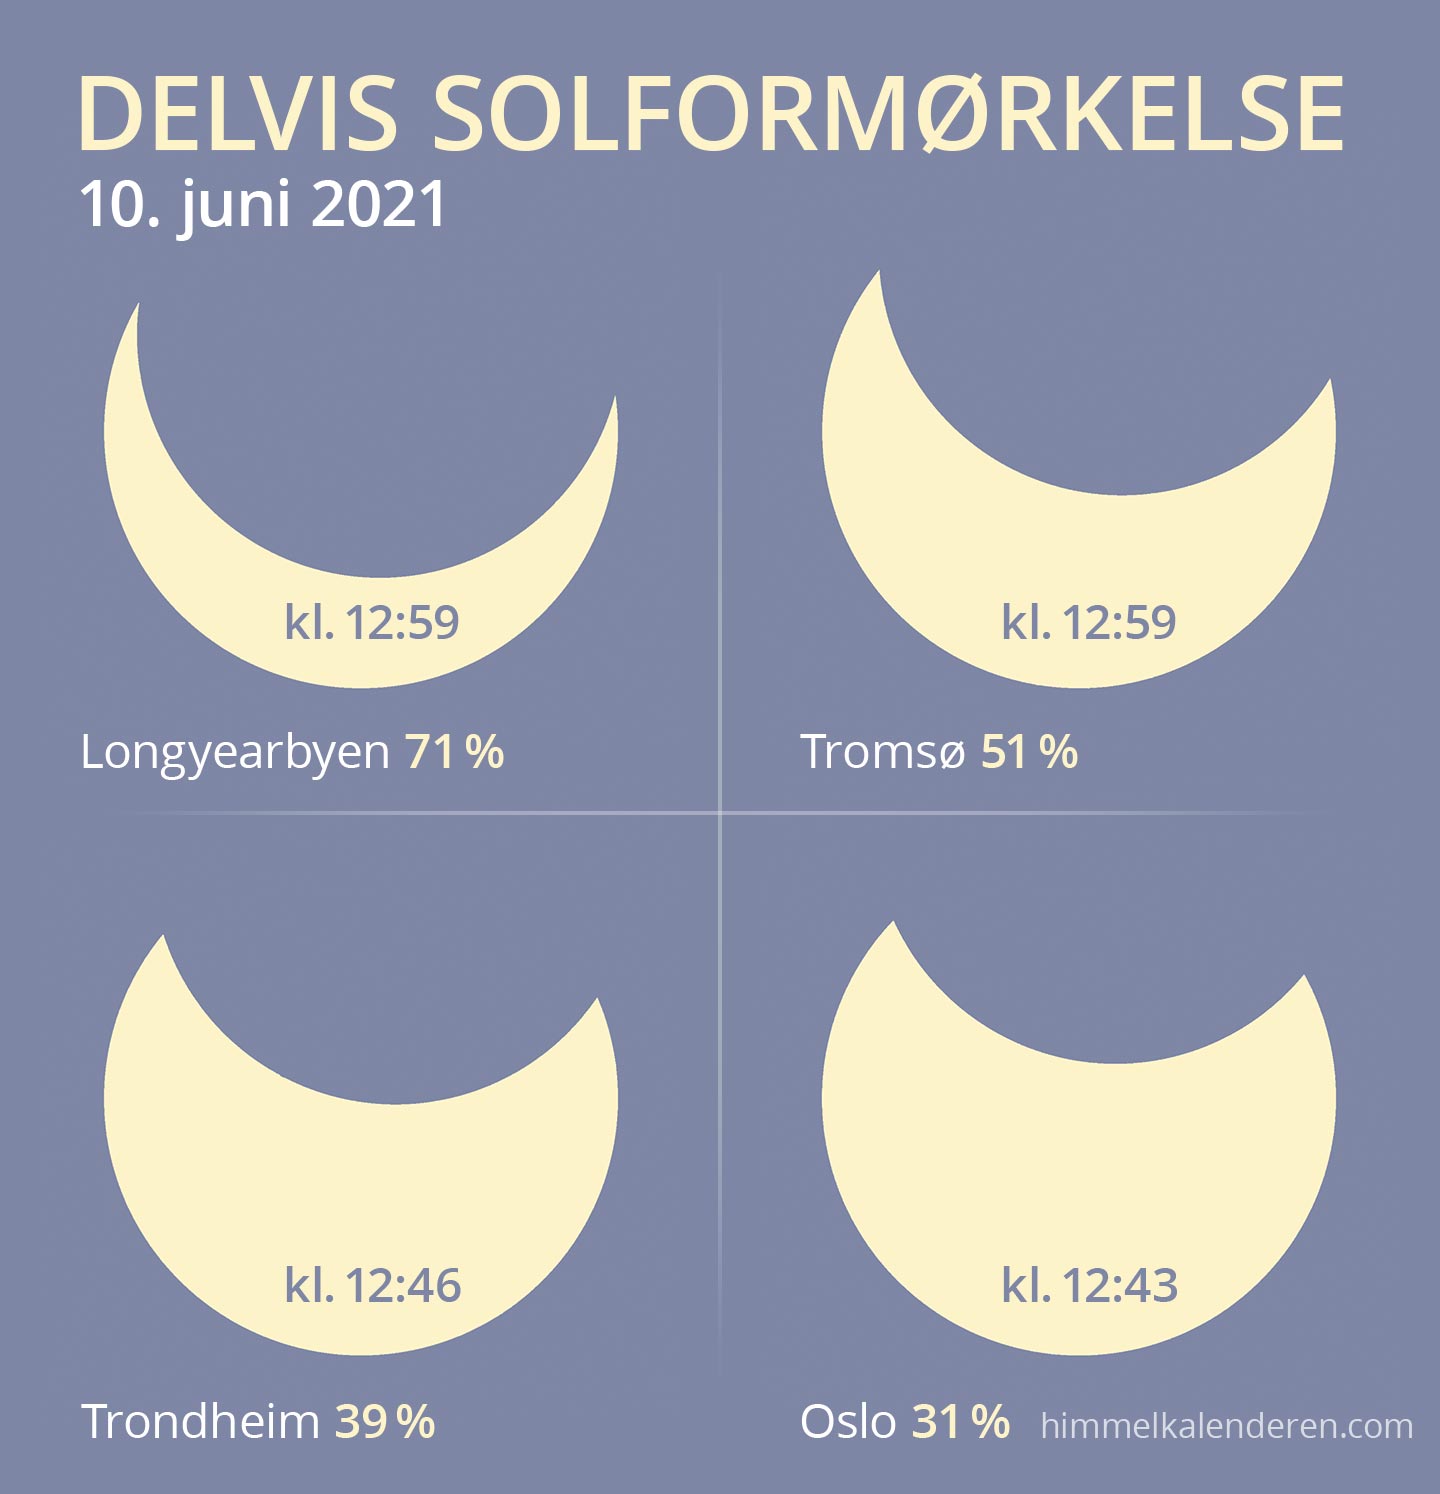 Delvis solformørkelse 10. juni 2021 i Norge